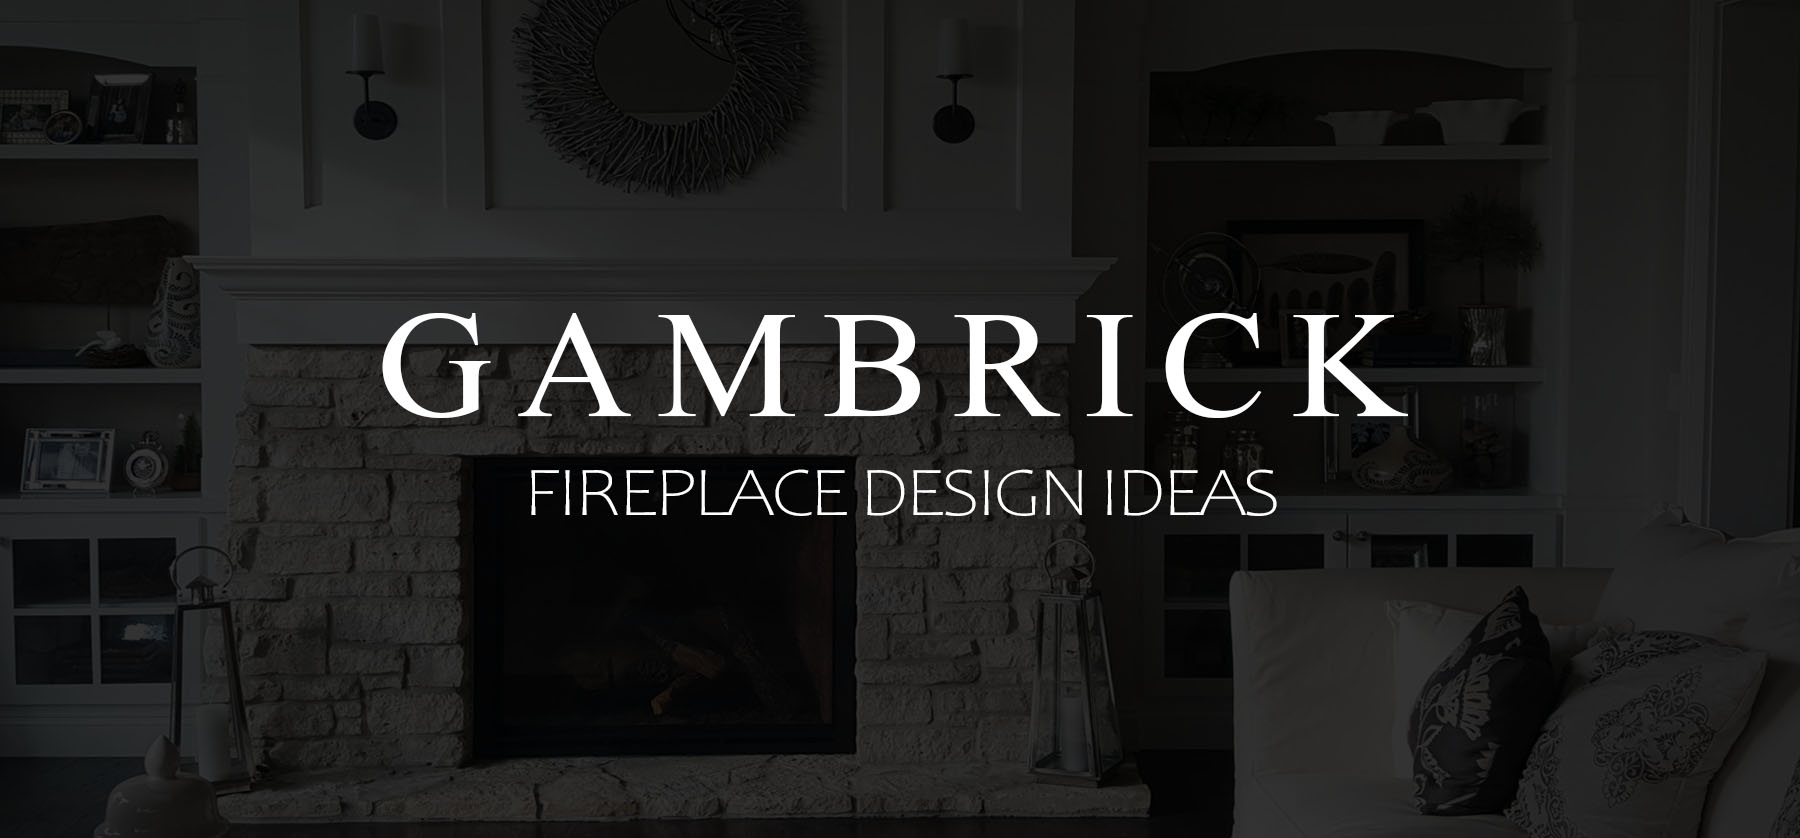 Fireplace Design Ideas banner 1